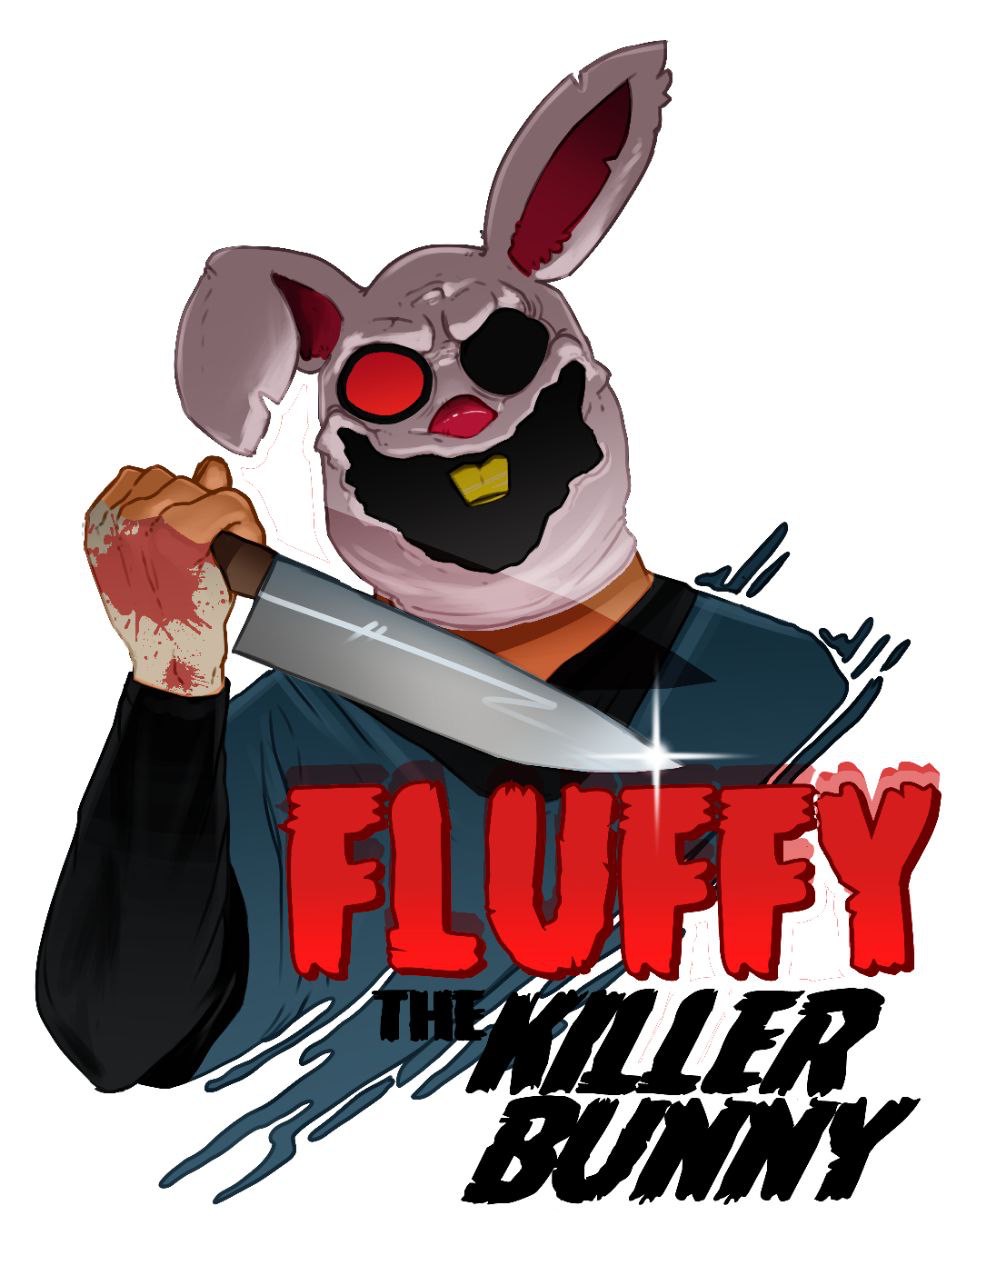 FLUFFY THE KILLER BUNNY # 1